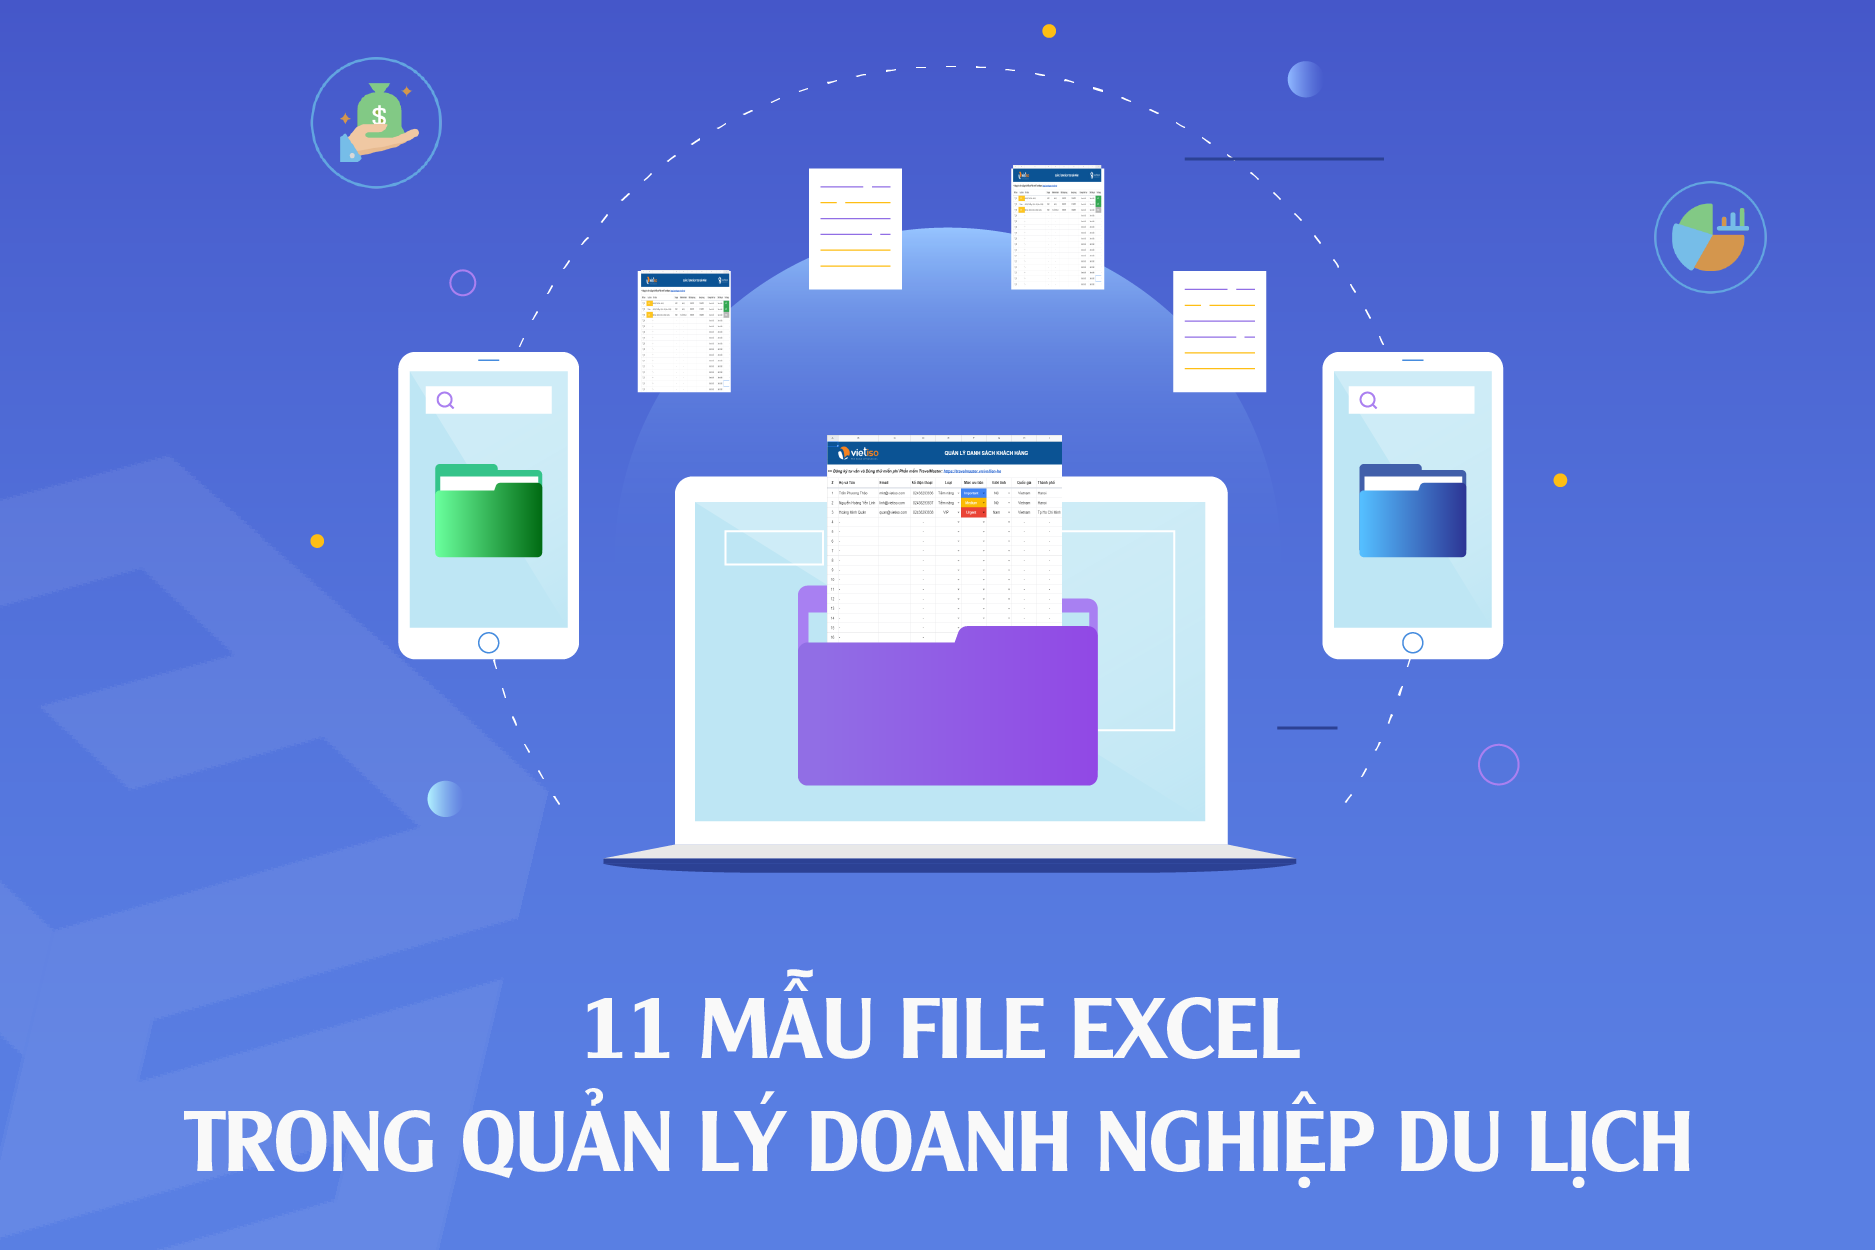 Free] 11 Mẫu File Excel Trong Quản Lý Doanh Nghiệp Du Lịch